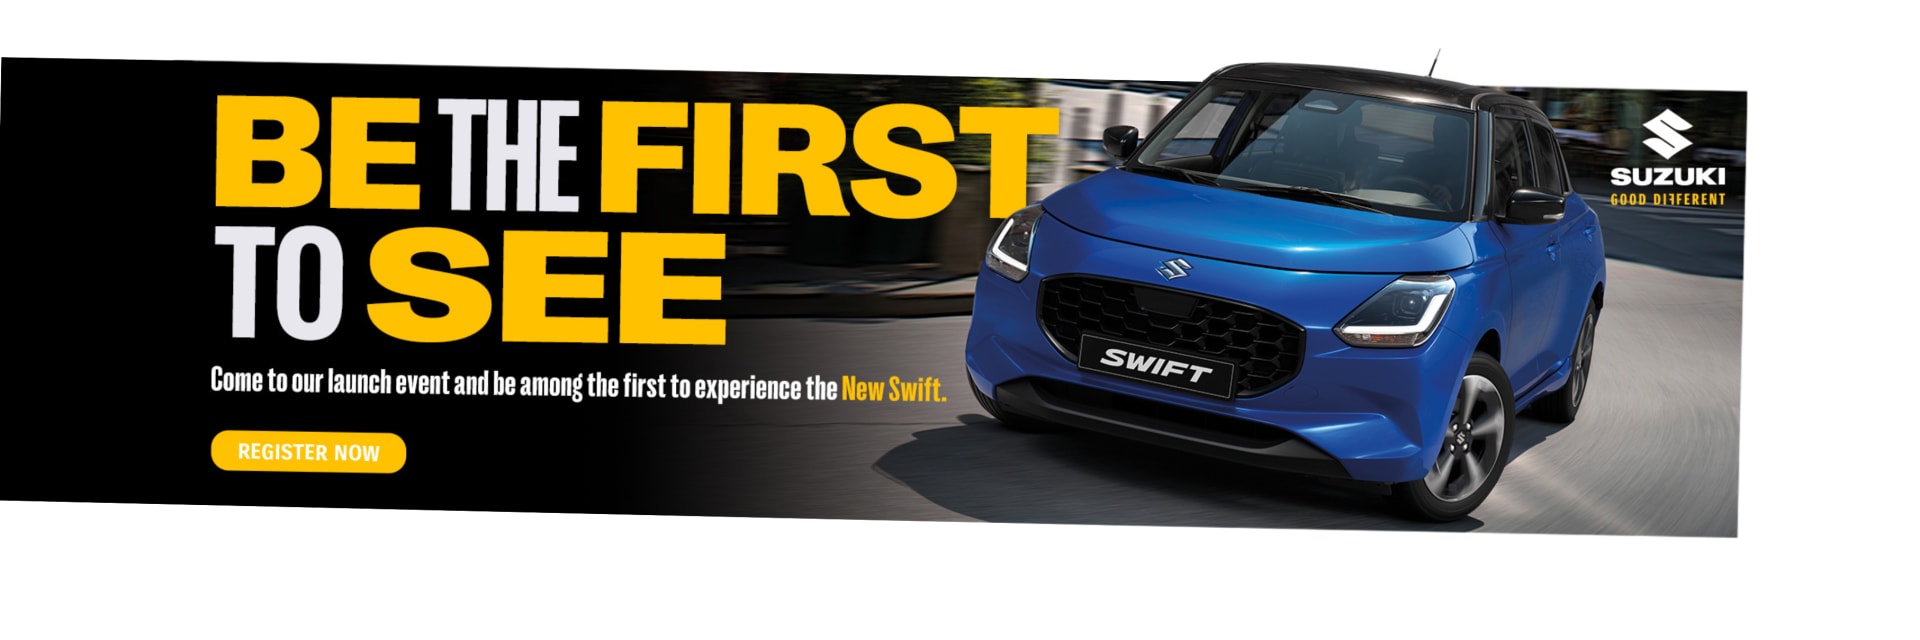 New Suzuki Swift Launch Events